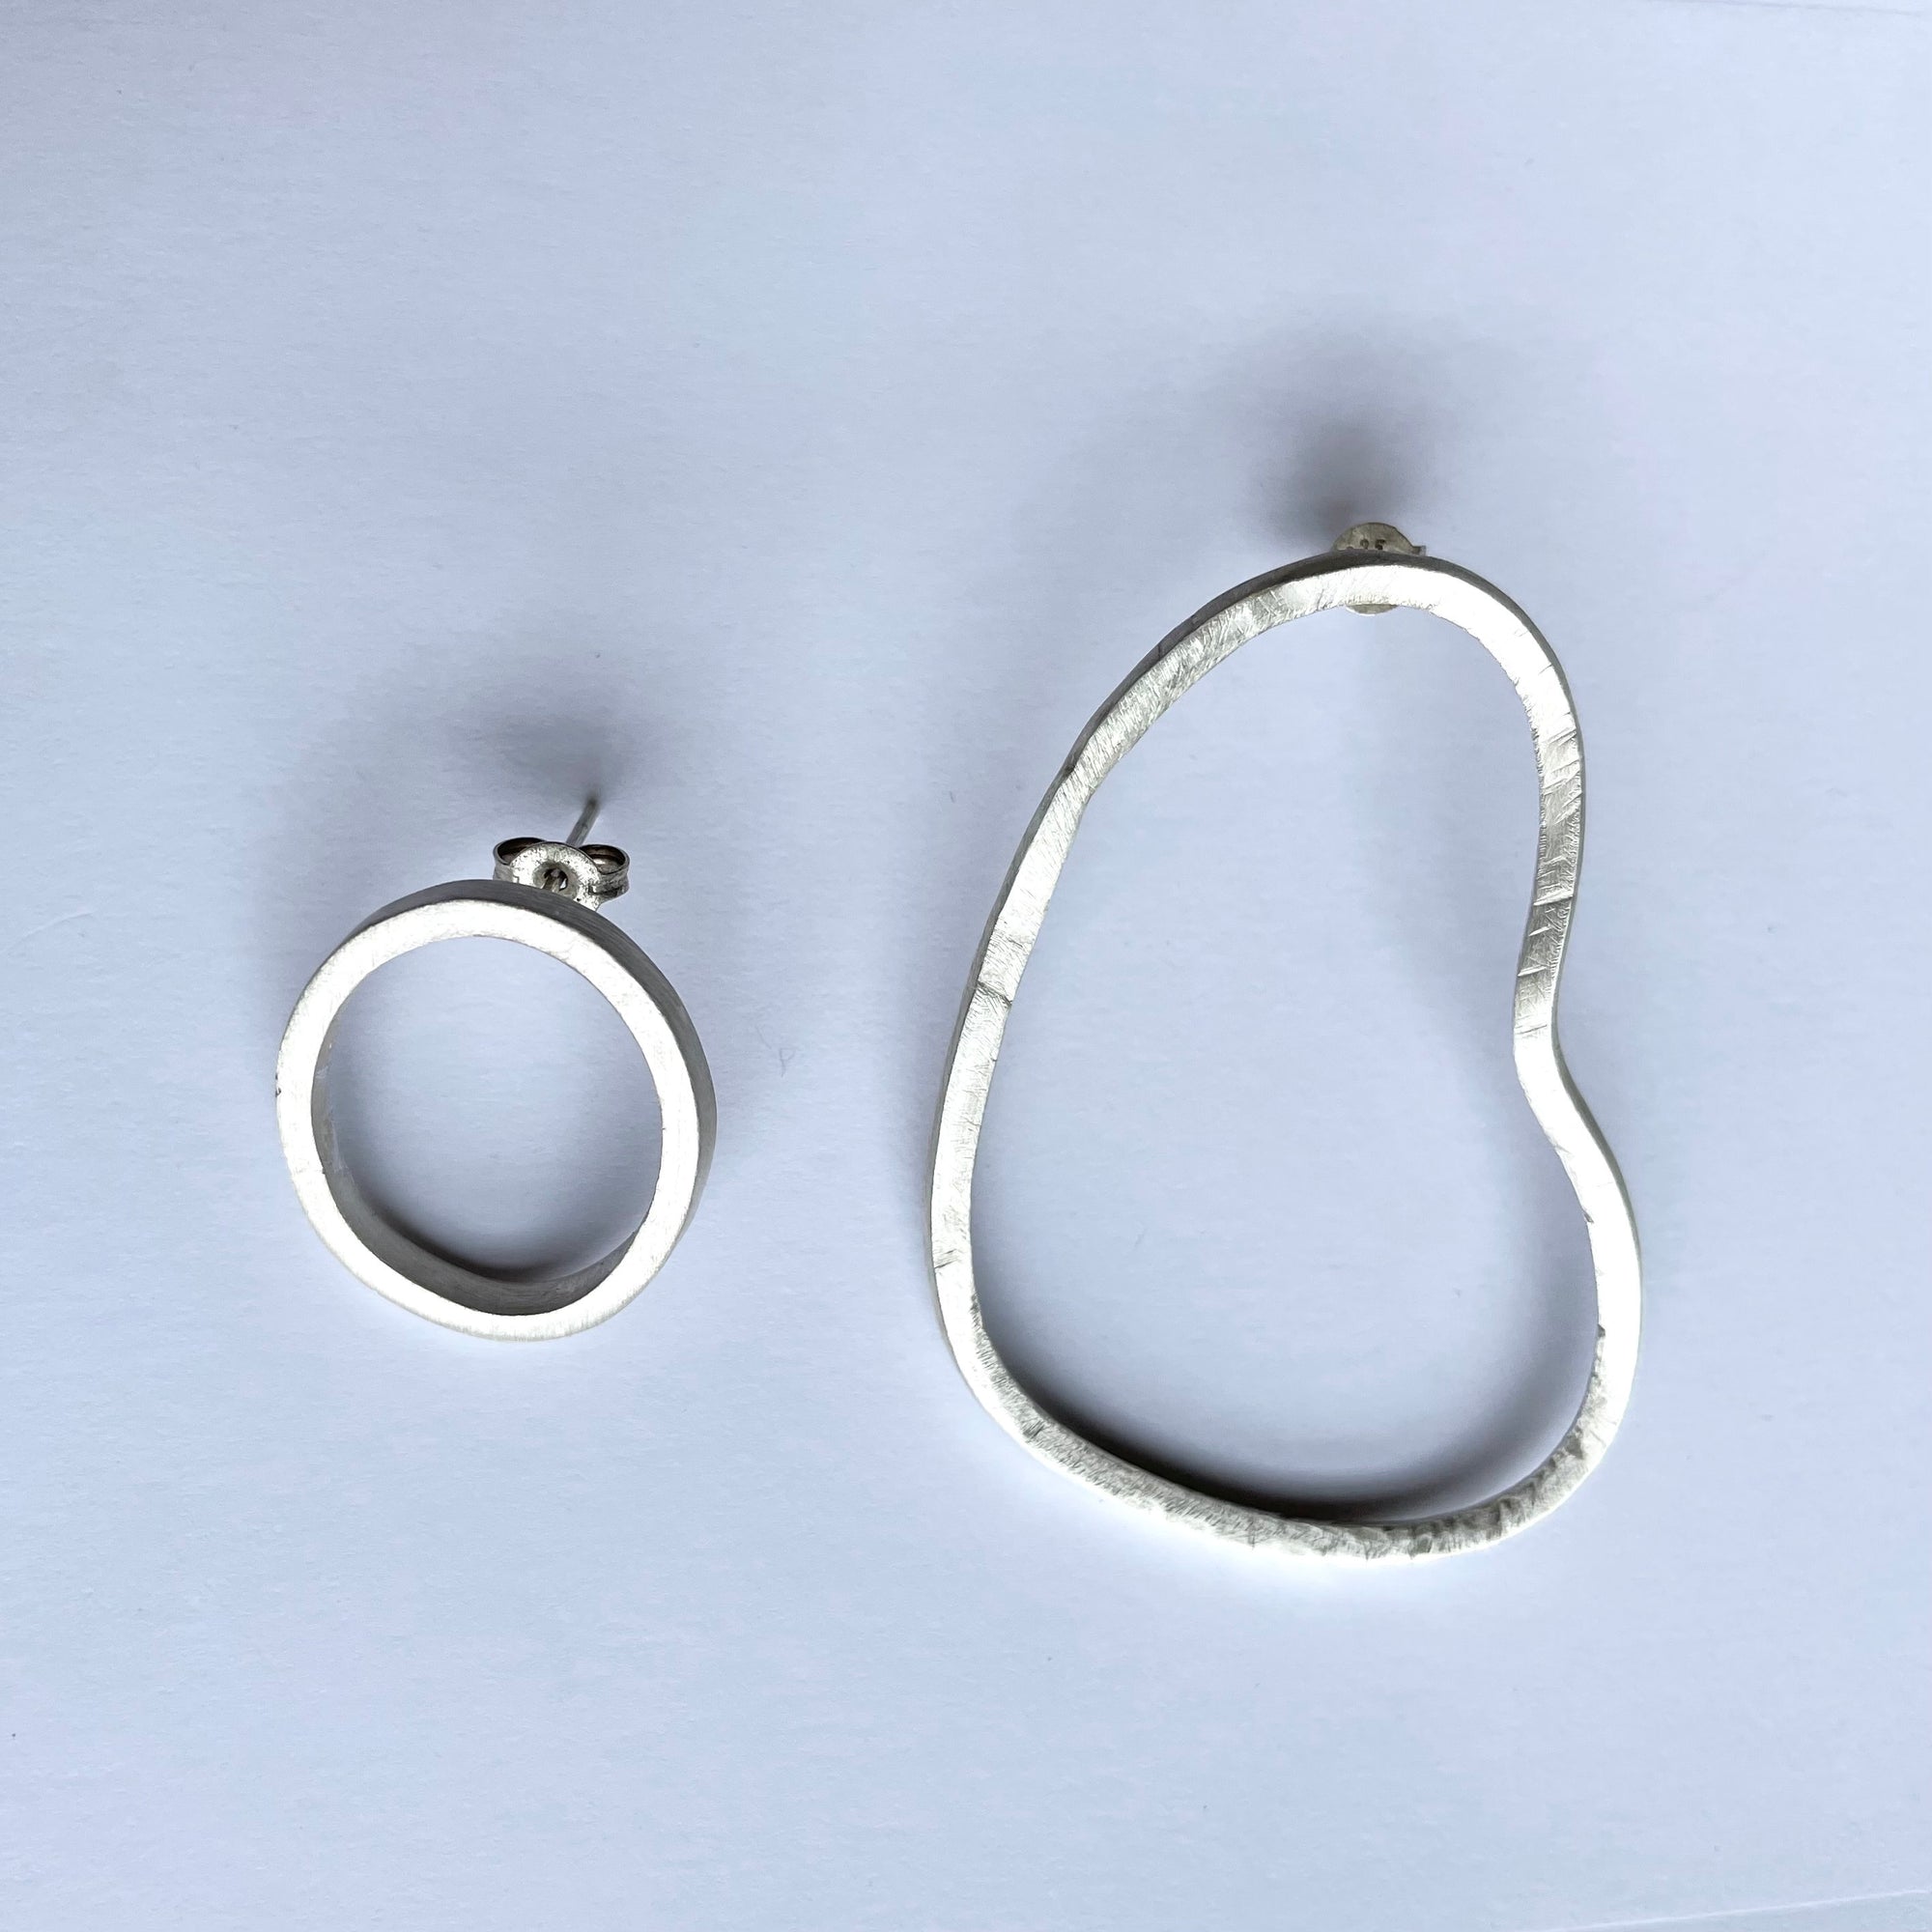 Stirling Silver Earrings